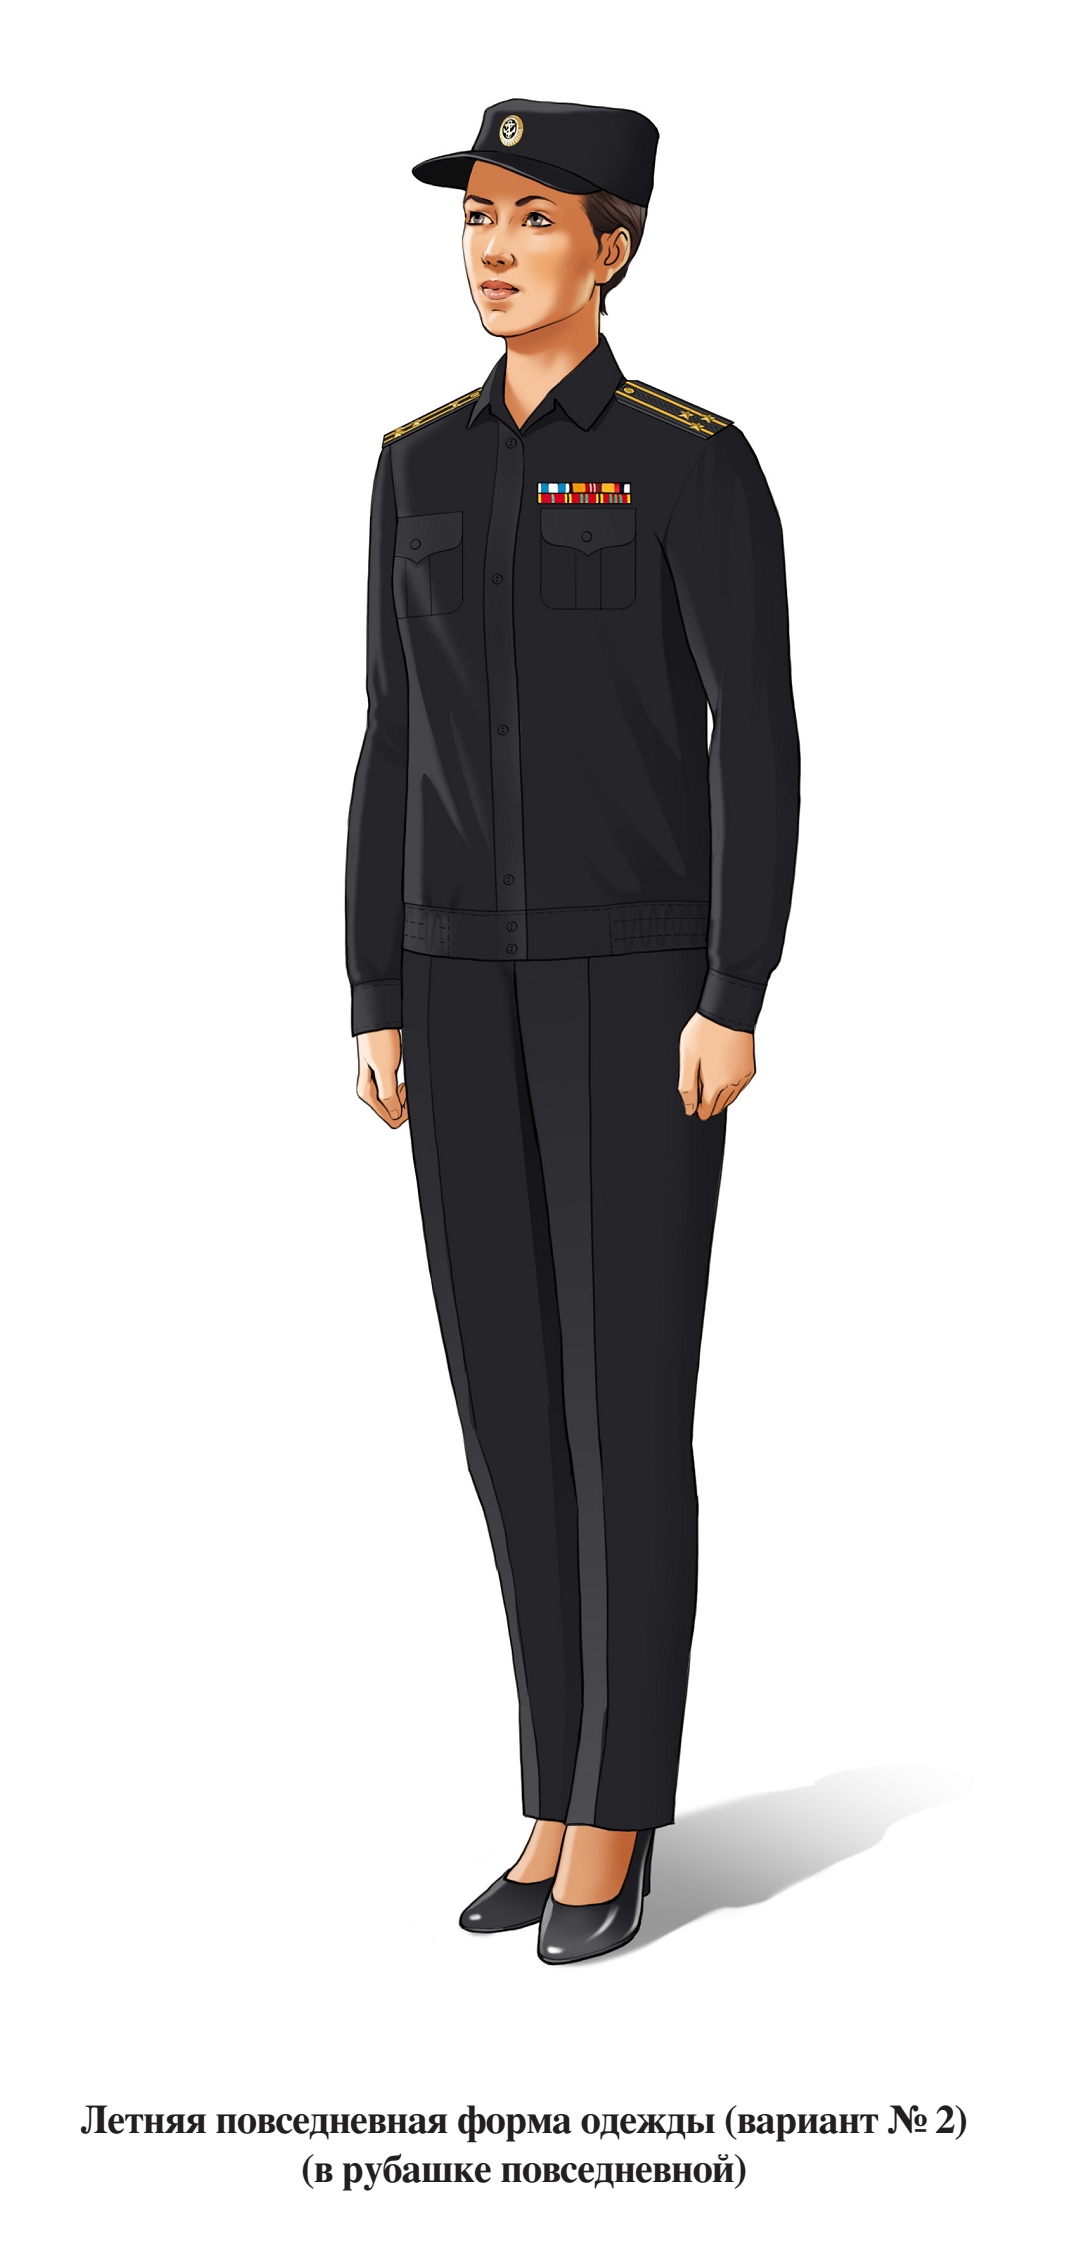 Летняя повседневная форма военнослужащих женского пола ВМФ, в брюках и рубашке с длинным рукавом